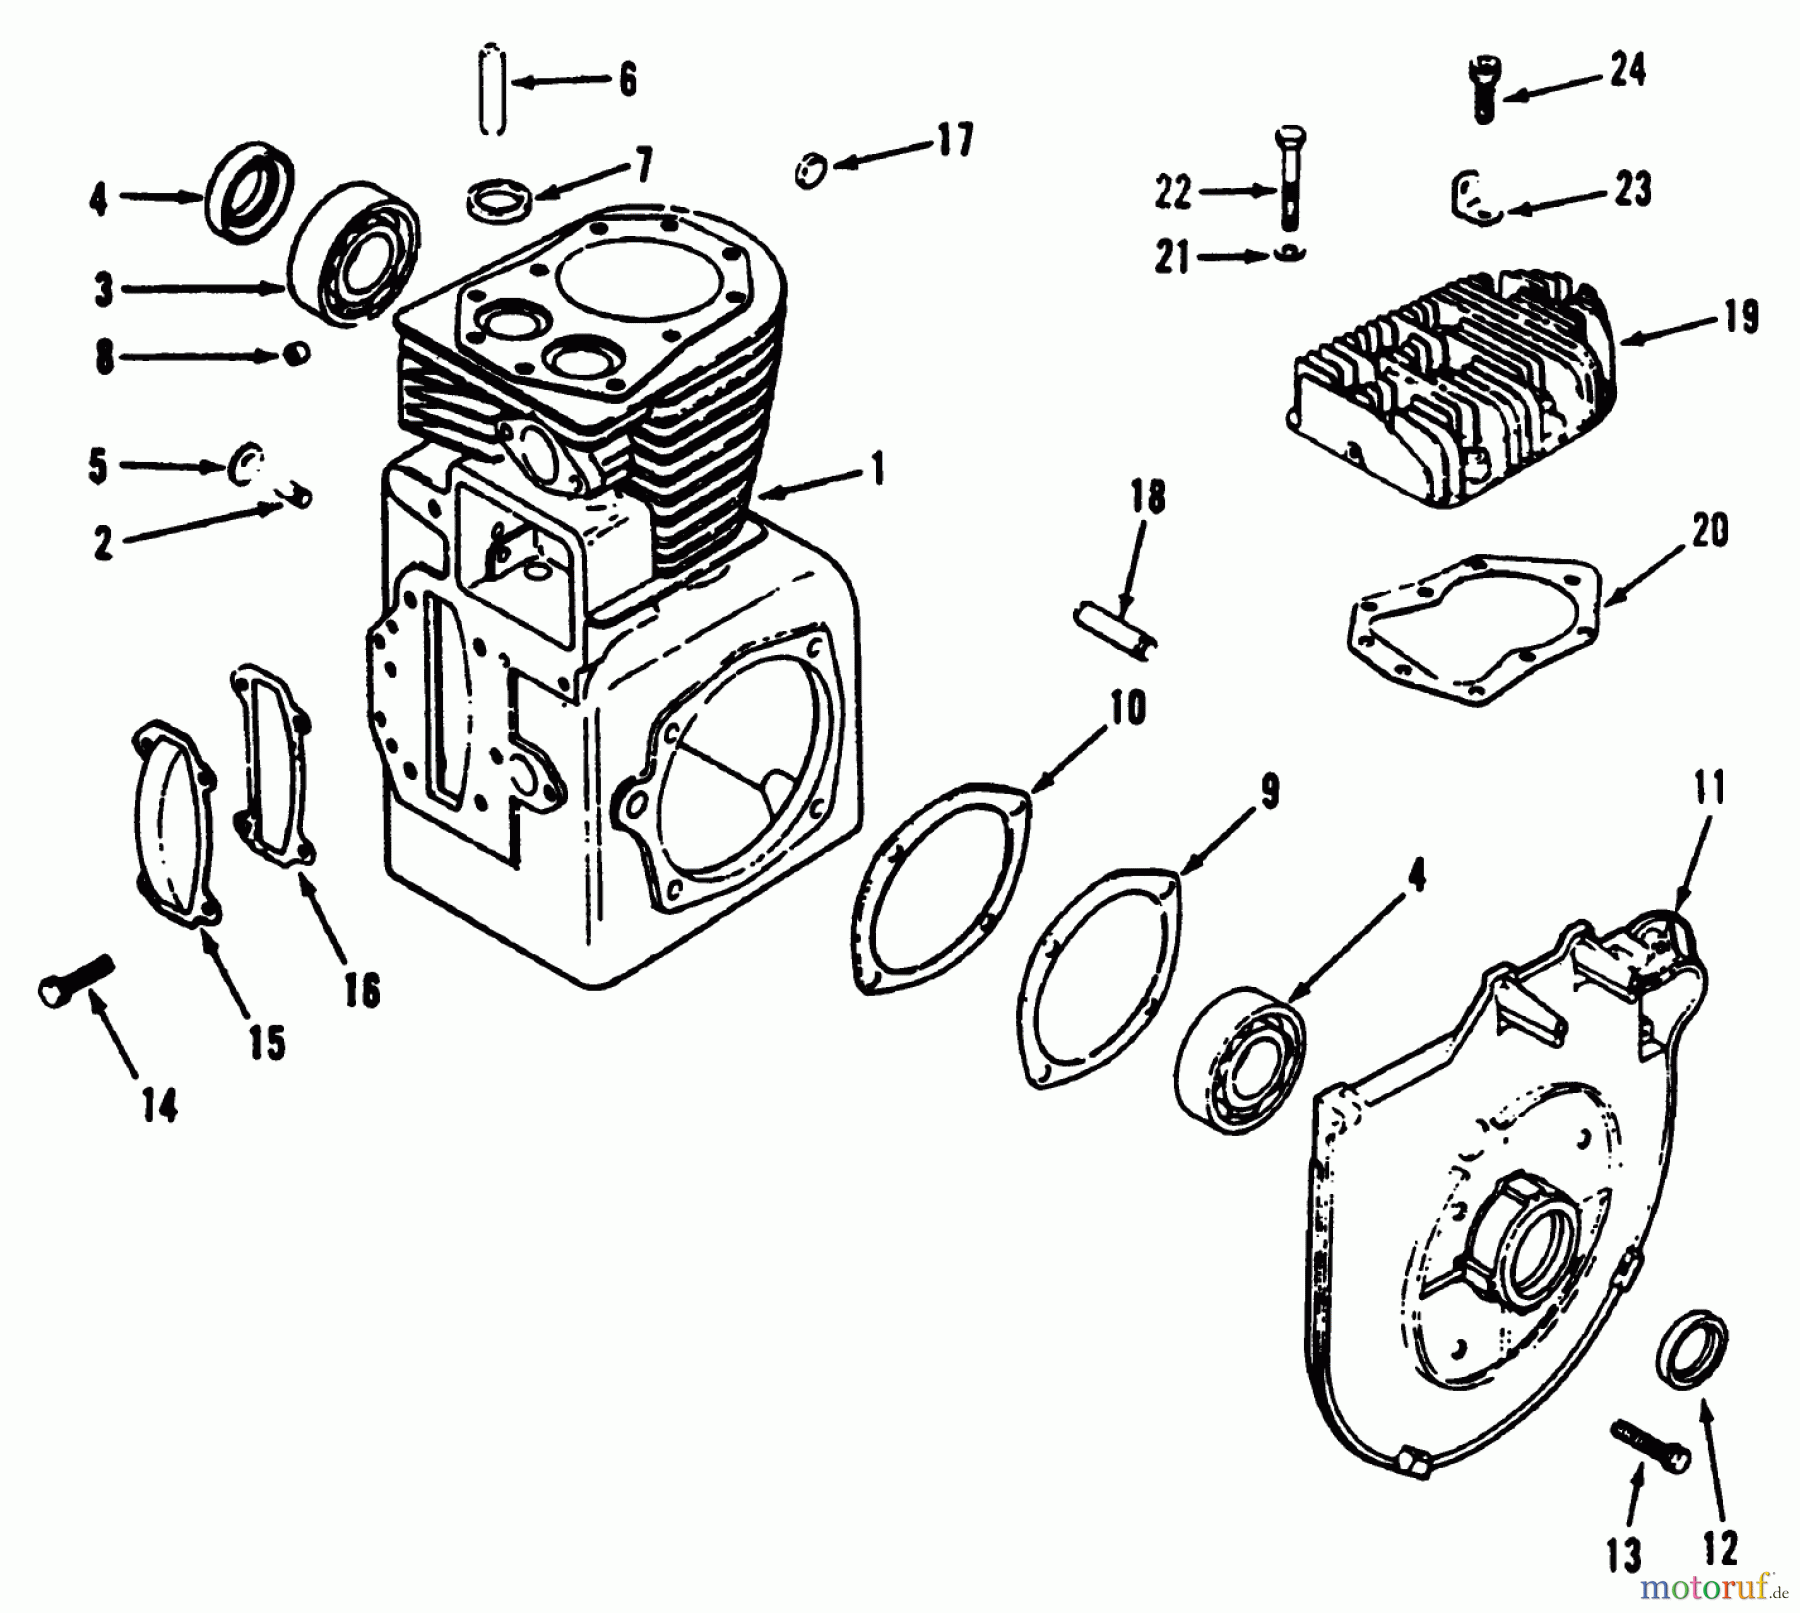  Toro Neu Mowers, Lawn & Garden Tractor Seite 2 R1-12K804 (312-8) - Toro 312-8 Garden Tractor, 1992 (2000001-2999999) KOHLER CRANKCASE AND CYLINDER HEAD